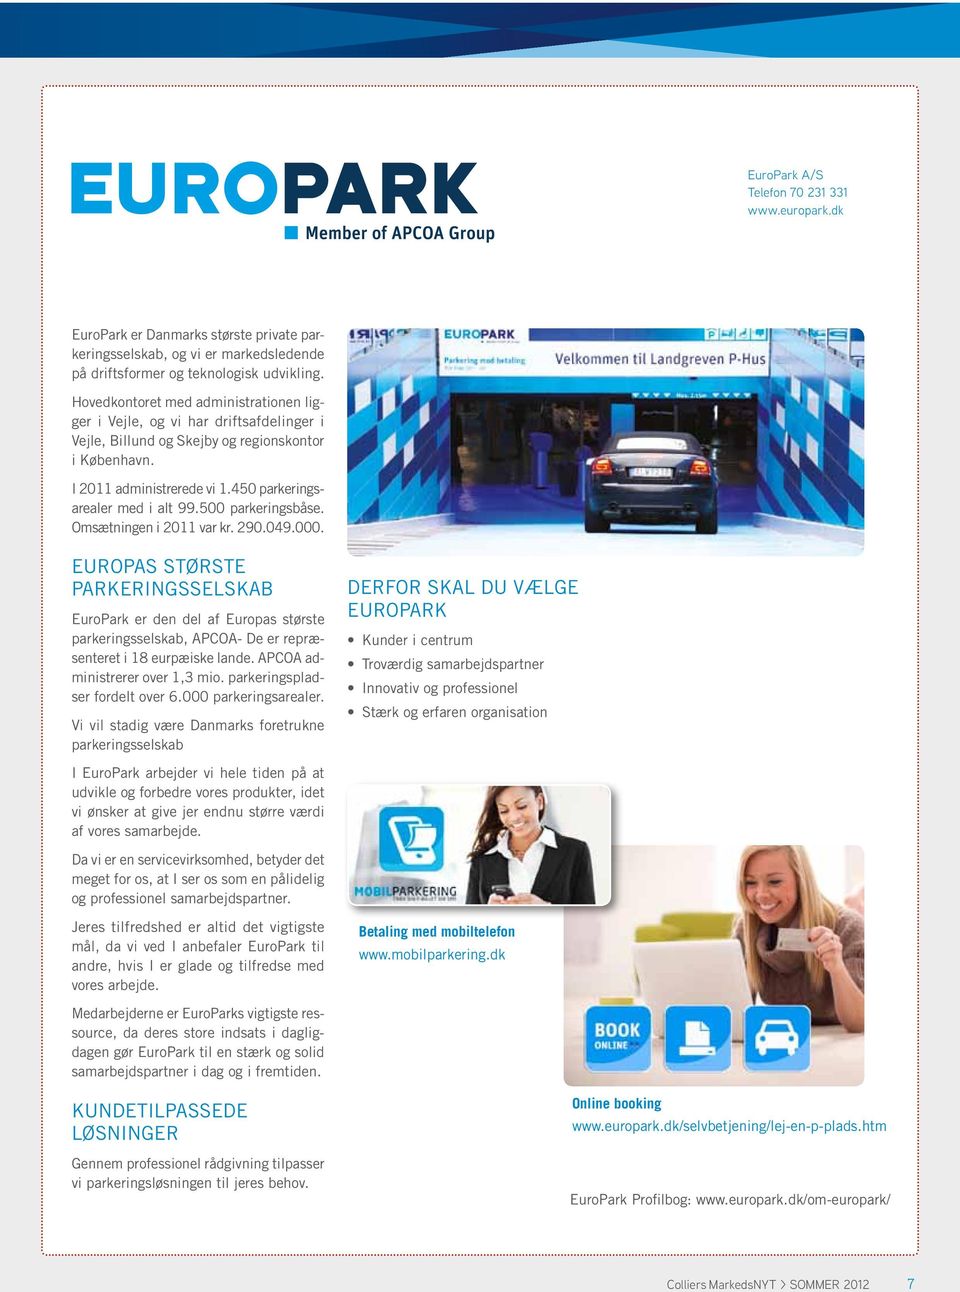 500 parkeringsbåse. Omsætningen i 2011 var kr. 290.049.000. Europas største parkeringsselskab EuroPark er den del af Europas største parkeringsselskab, APCOA- De er repræsenteret i 18 eurpæiske lande.